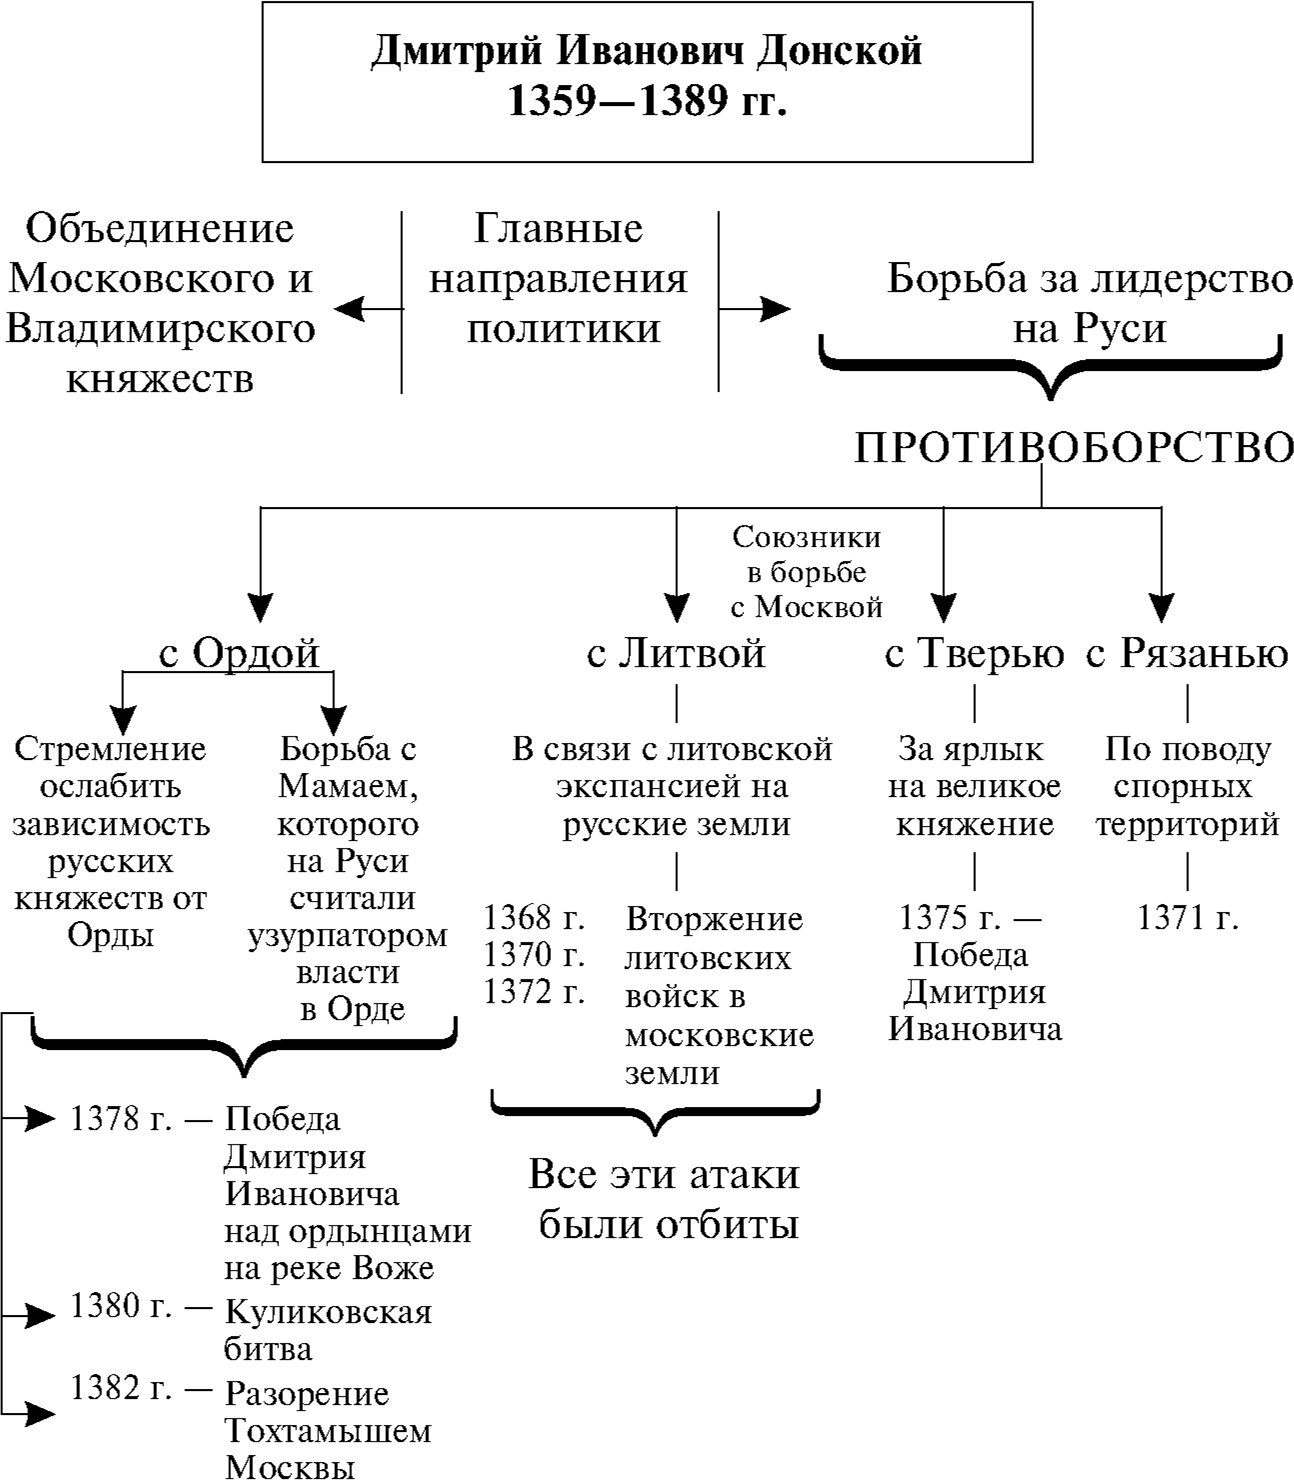 Даты правления московского князя дмитрия донского